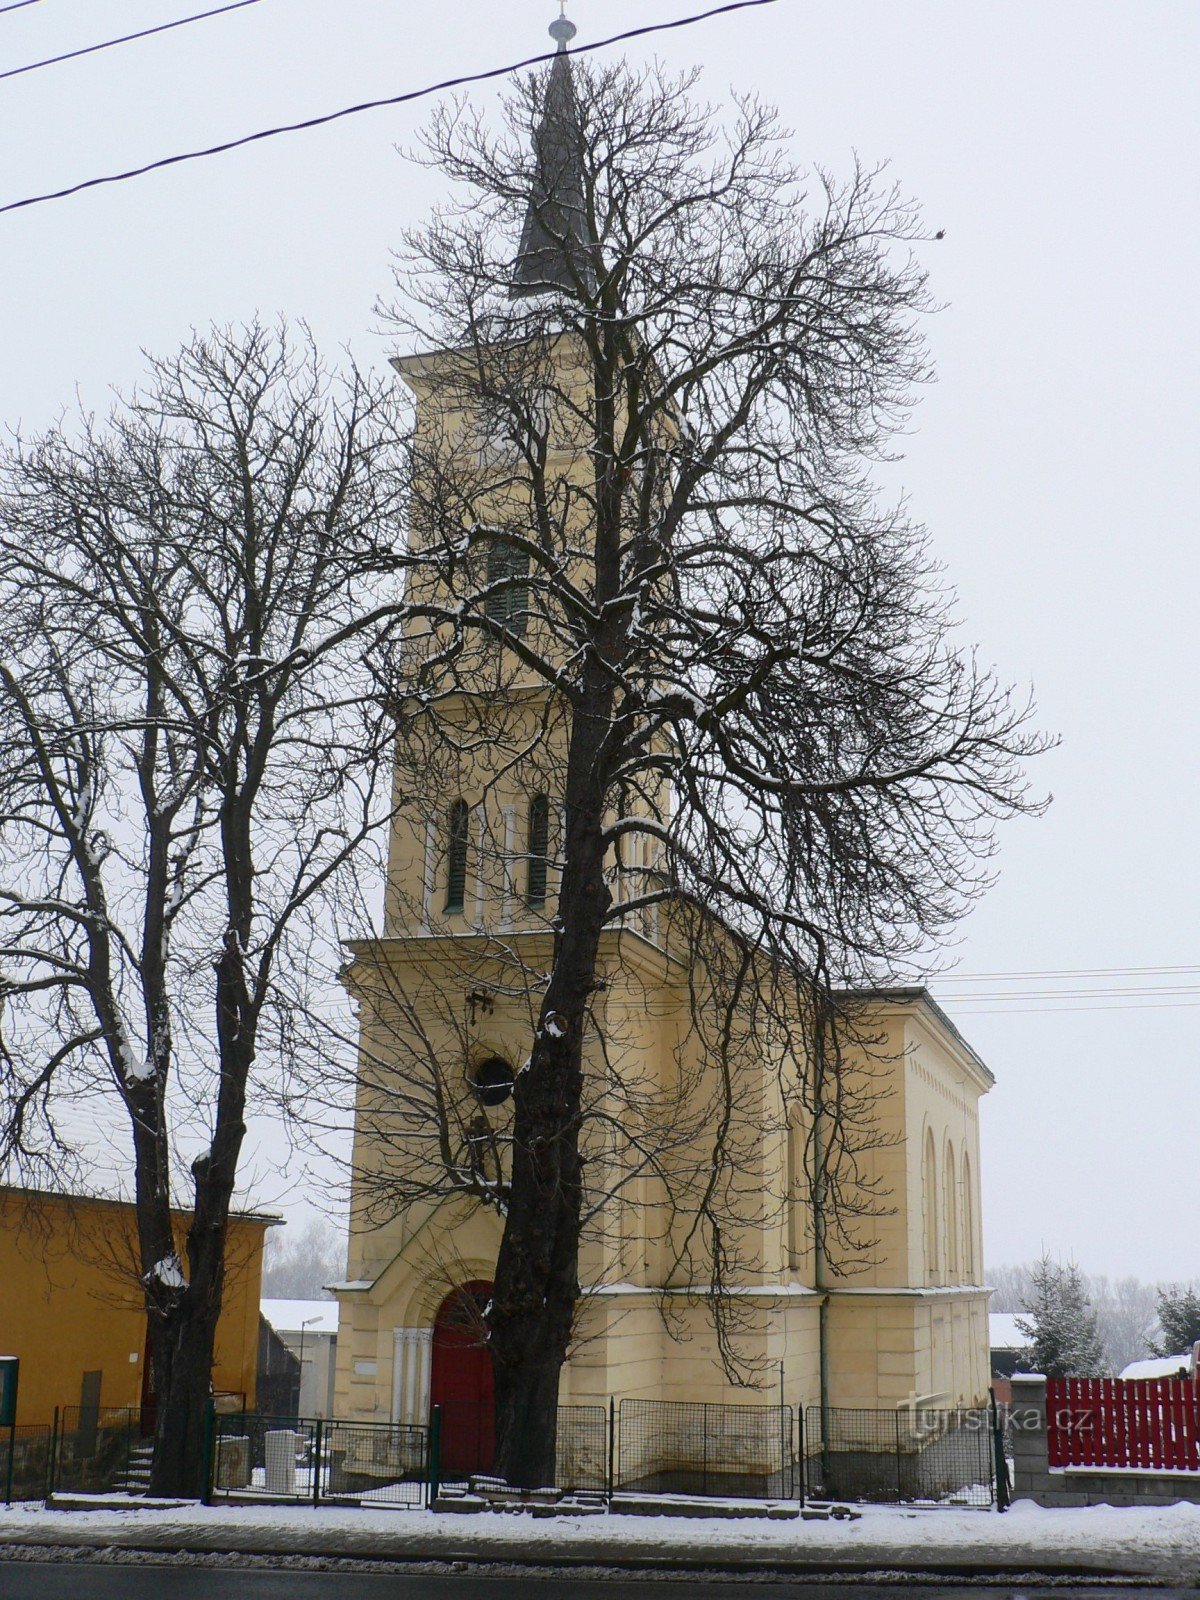 Die Kirche wurde schlecht fotografiert - sie ist hinter Bäumen versteckt